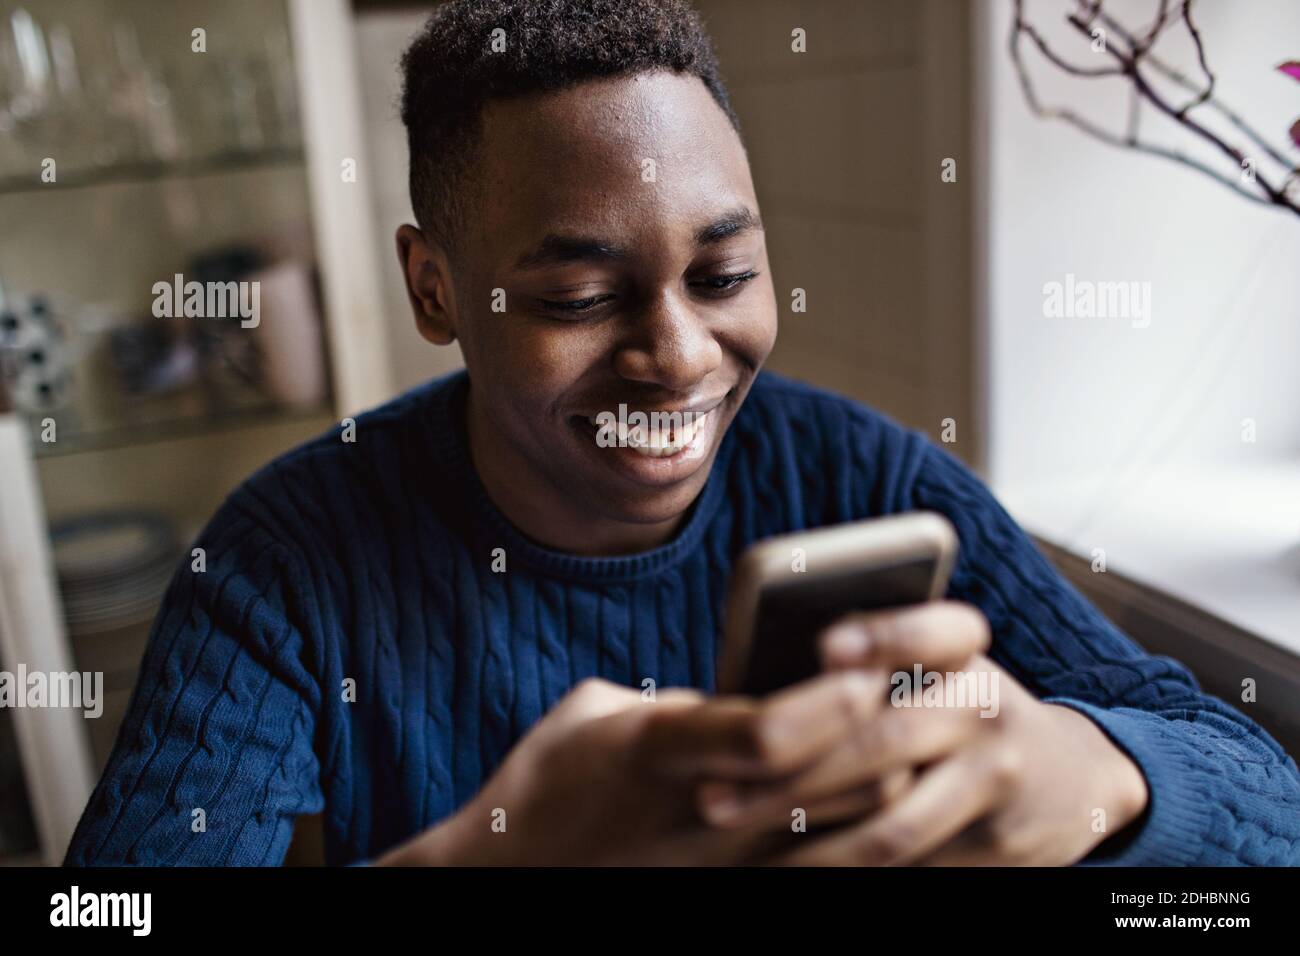 Jeune garçon souriant utilisant un smartphone tout en étant assis à la maison Banque D'Images